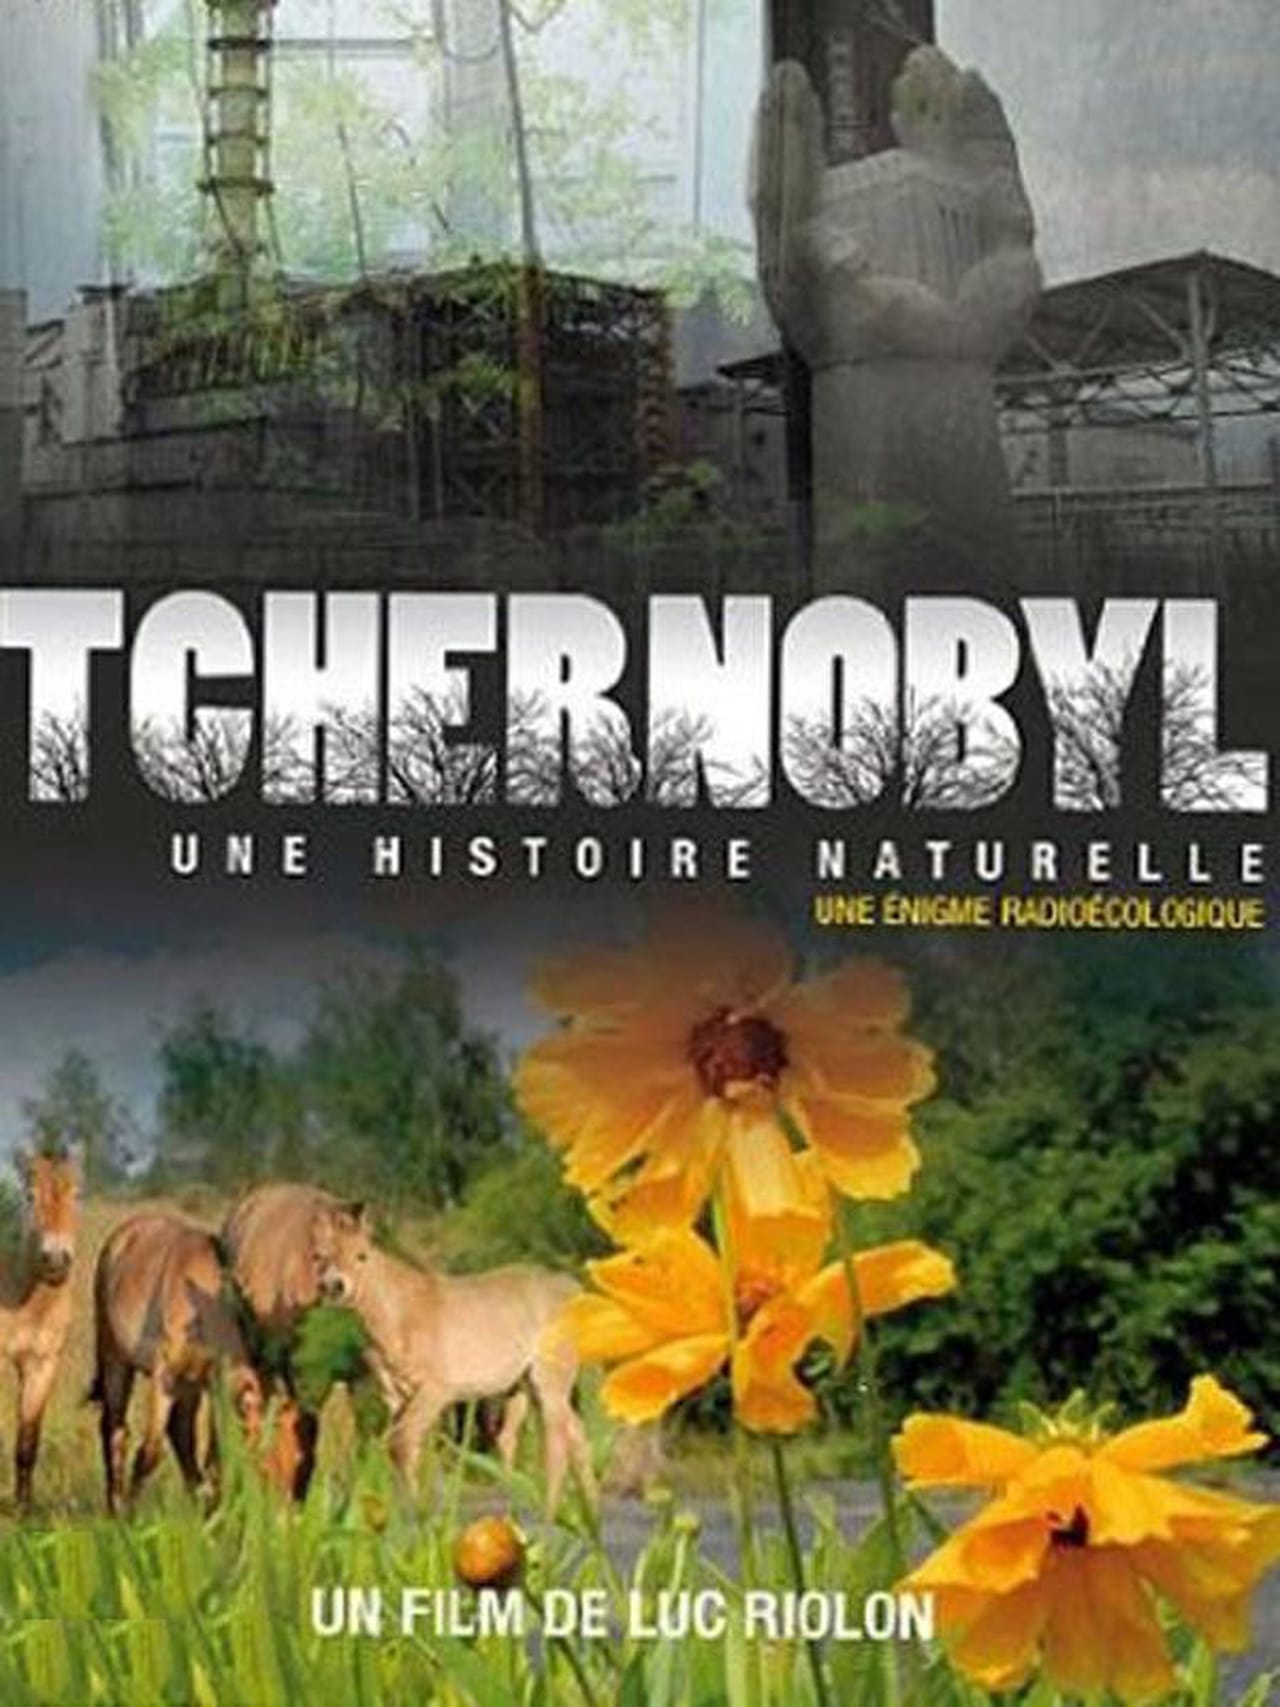 Chernóbil, ¿una historia natural? un enigma radioactivo (2010)